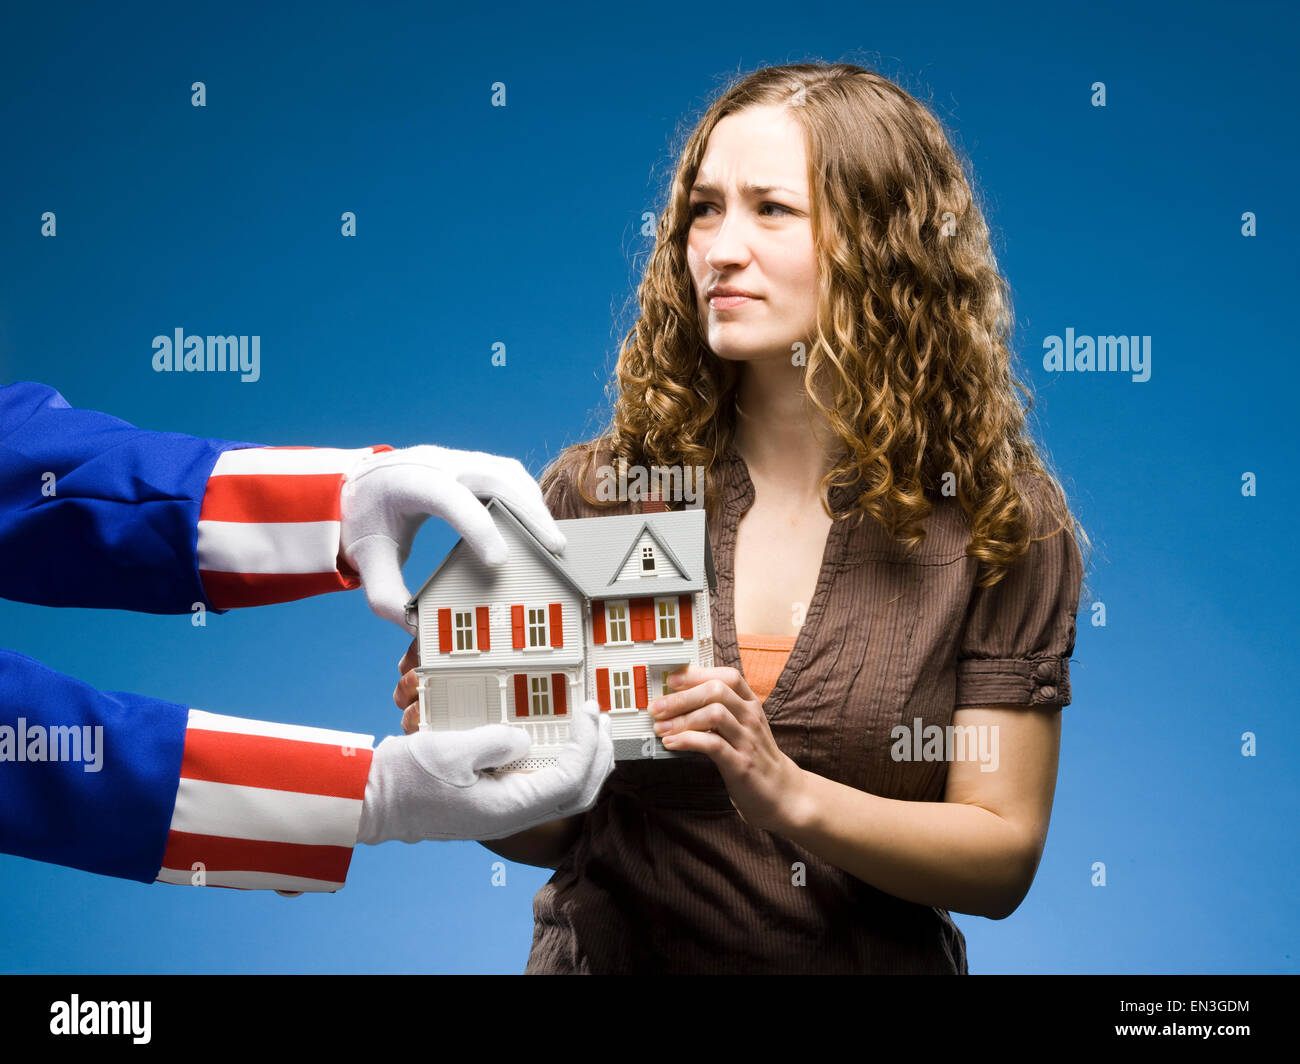 Femme tenant une miniature house alors que l'Oncle Sam tente de l'enlever Banque D'Images